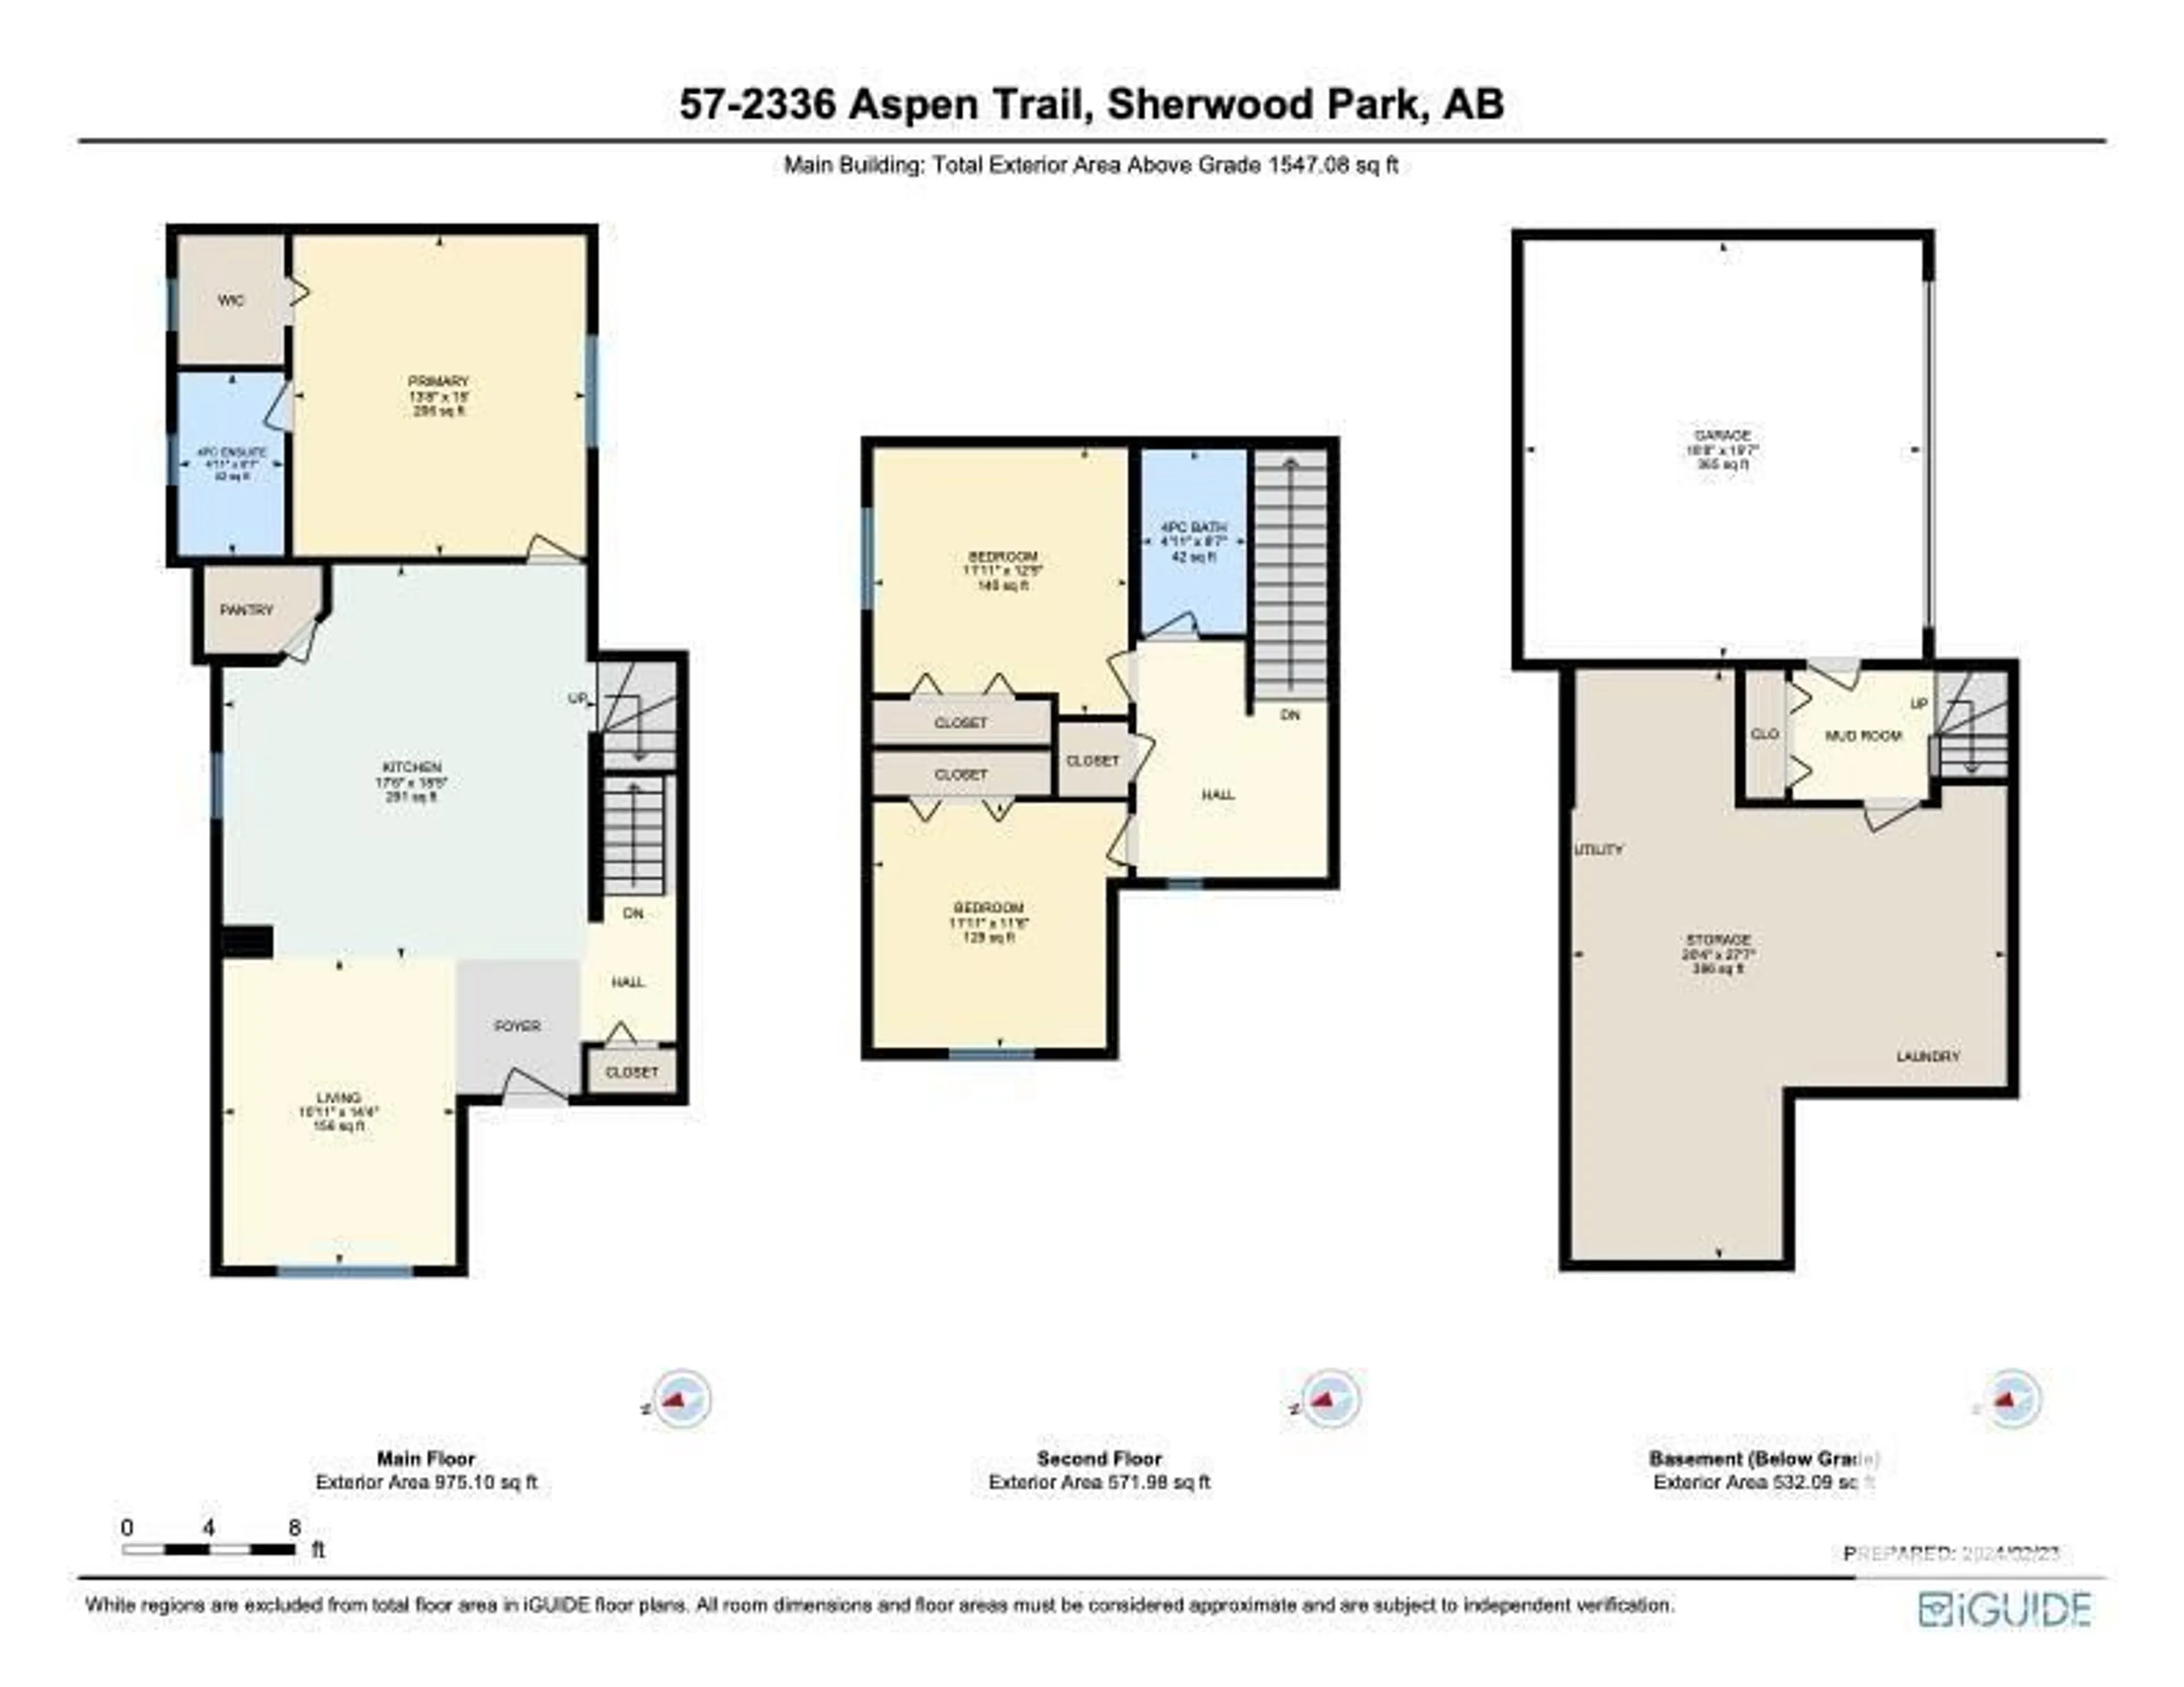 Floor plan for #57 2336 ASPEN TR, Sherwood Park Alberta T8H0J1